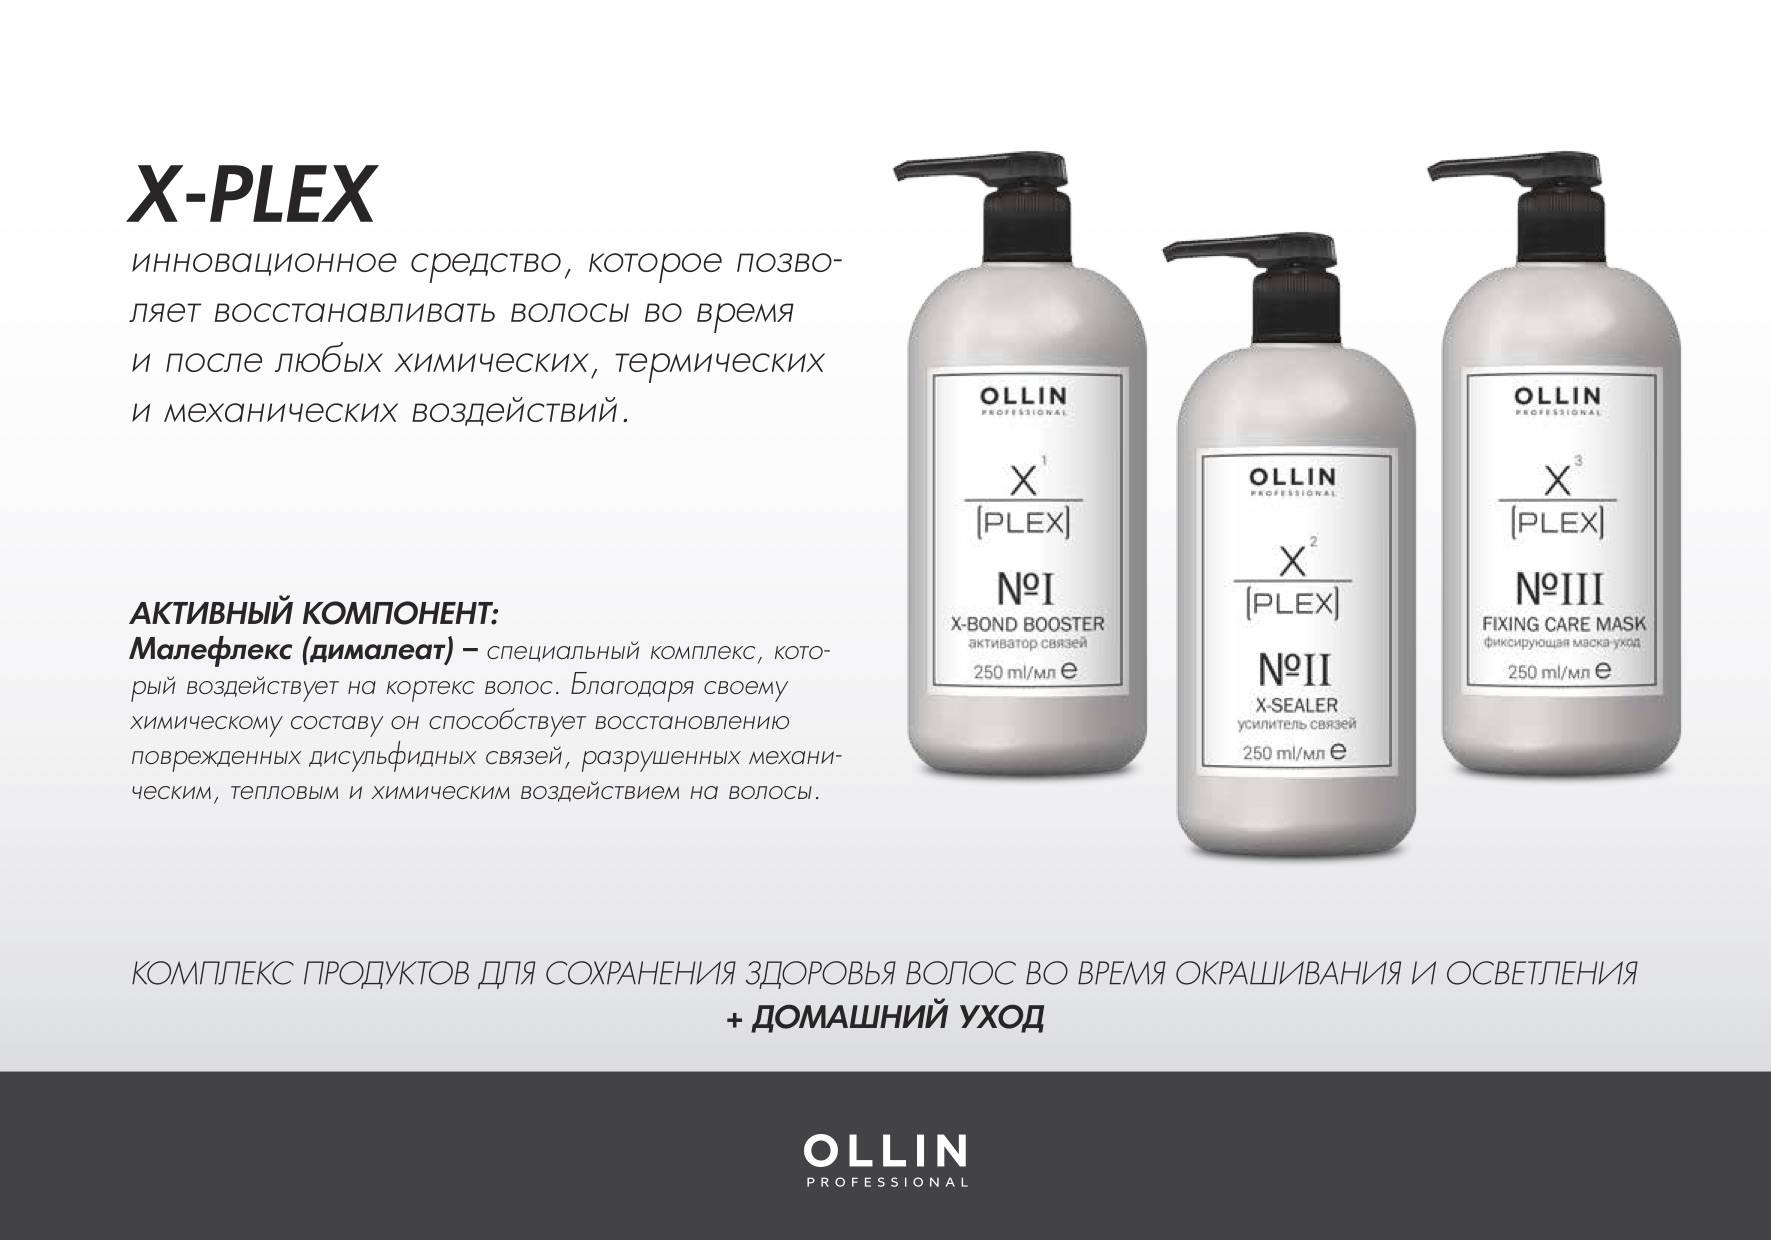 Средства после химии. Ollin x-Plex набор. Plex Ollin для волос. Ollin, набор №1 (активатор связей 1х250 мл; усилитель связей 2х250 мл) x-Plex. Ollin professional x-Plex x-Sealer no2.